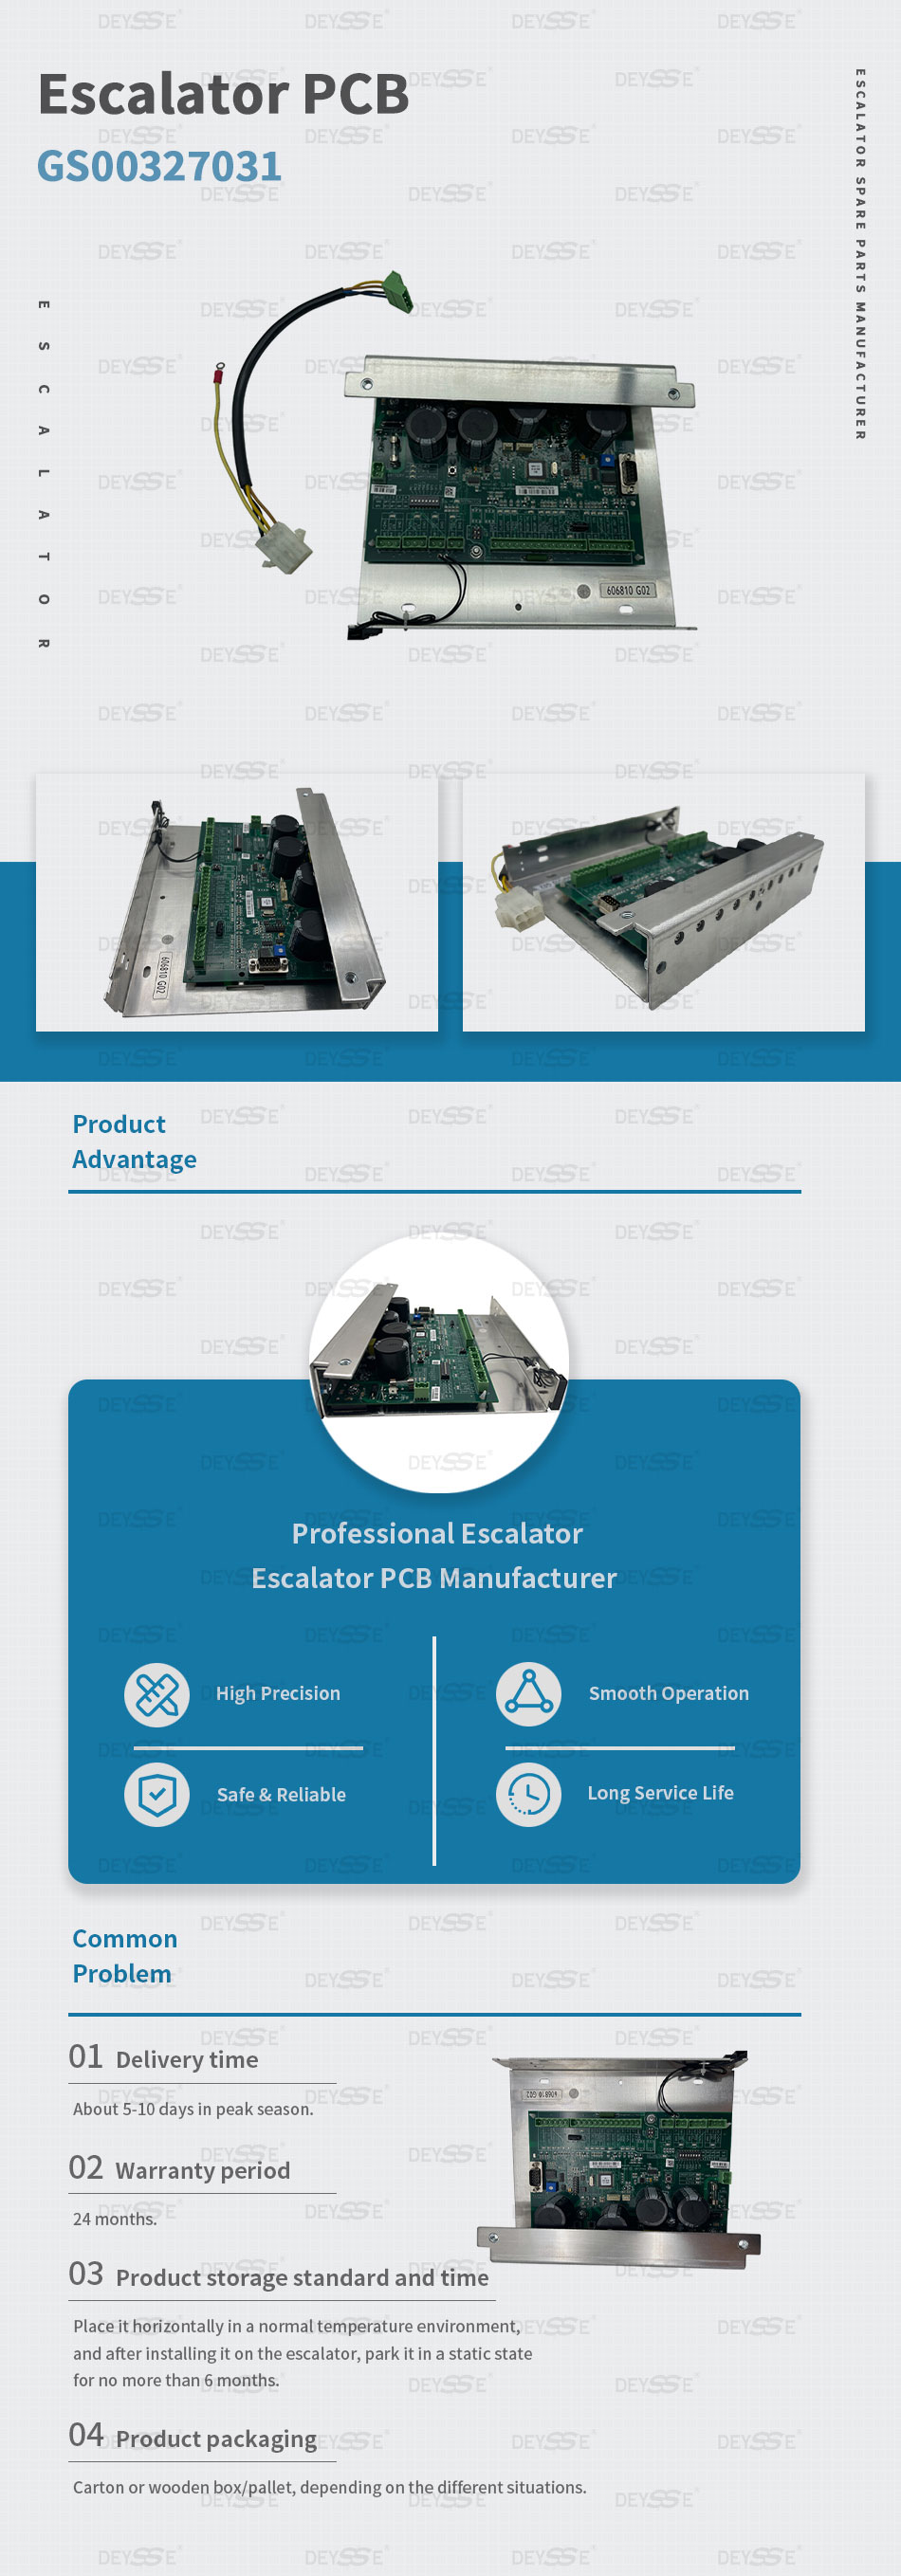 Escalator PCB Parts KM606810G02 Diagnostic Board